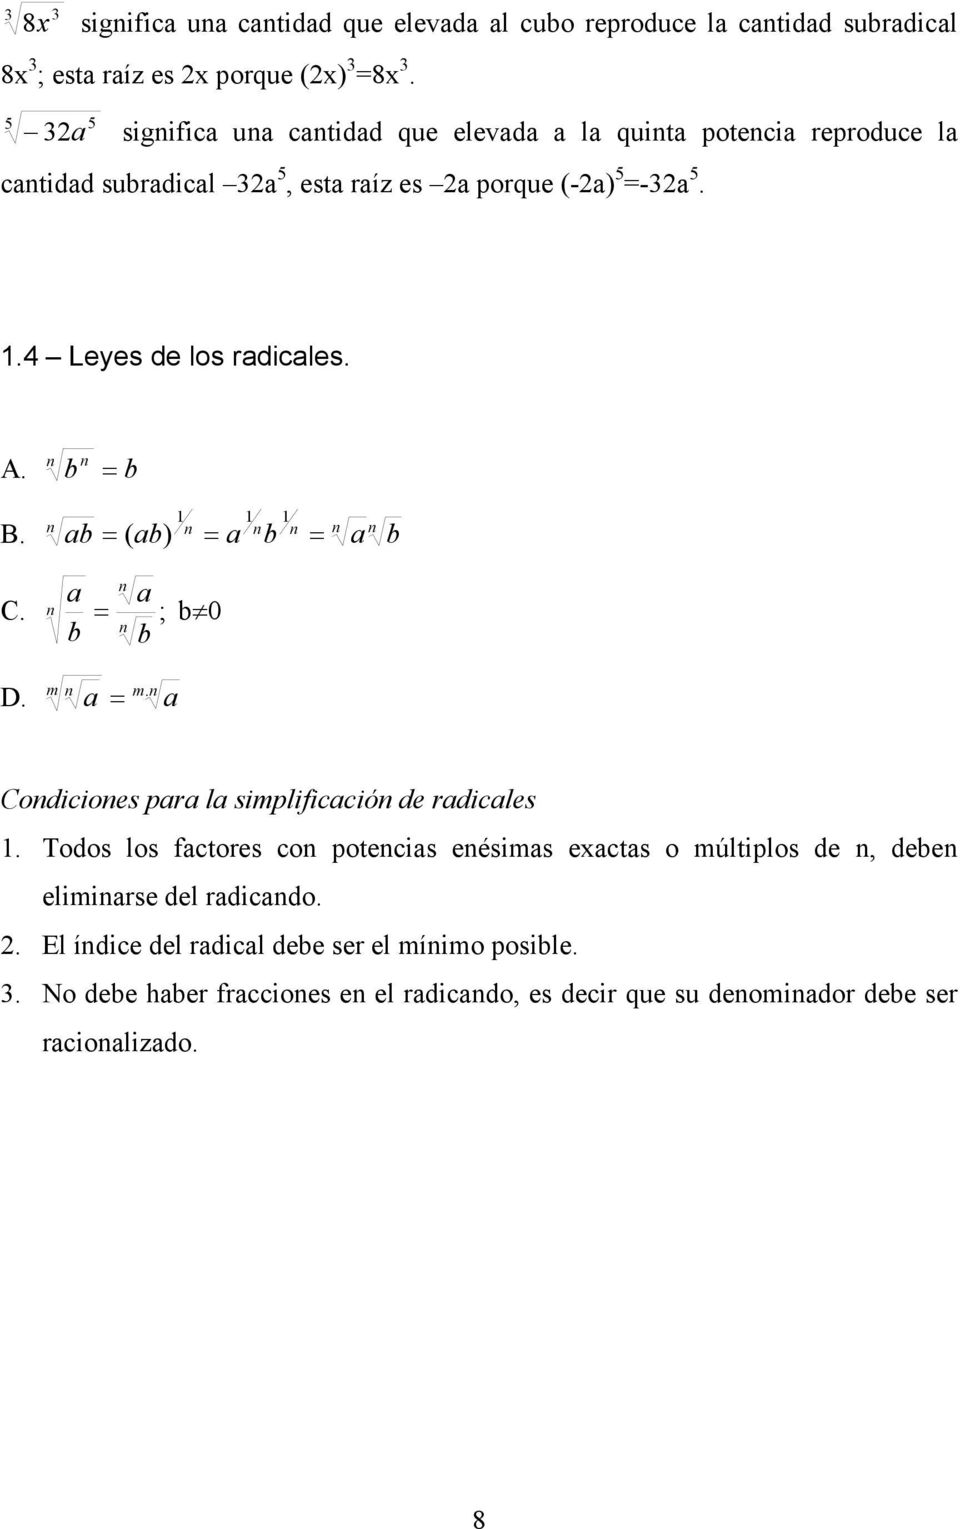 4 Leyes de los radicales. A. 1 B. a ( a) a a 1 1 a a C. ; 0 m D. m. a a Codicioes para la simplificació de radicales 1.